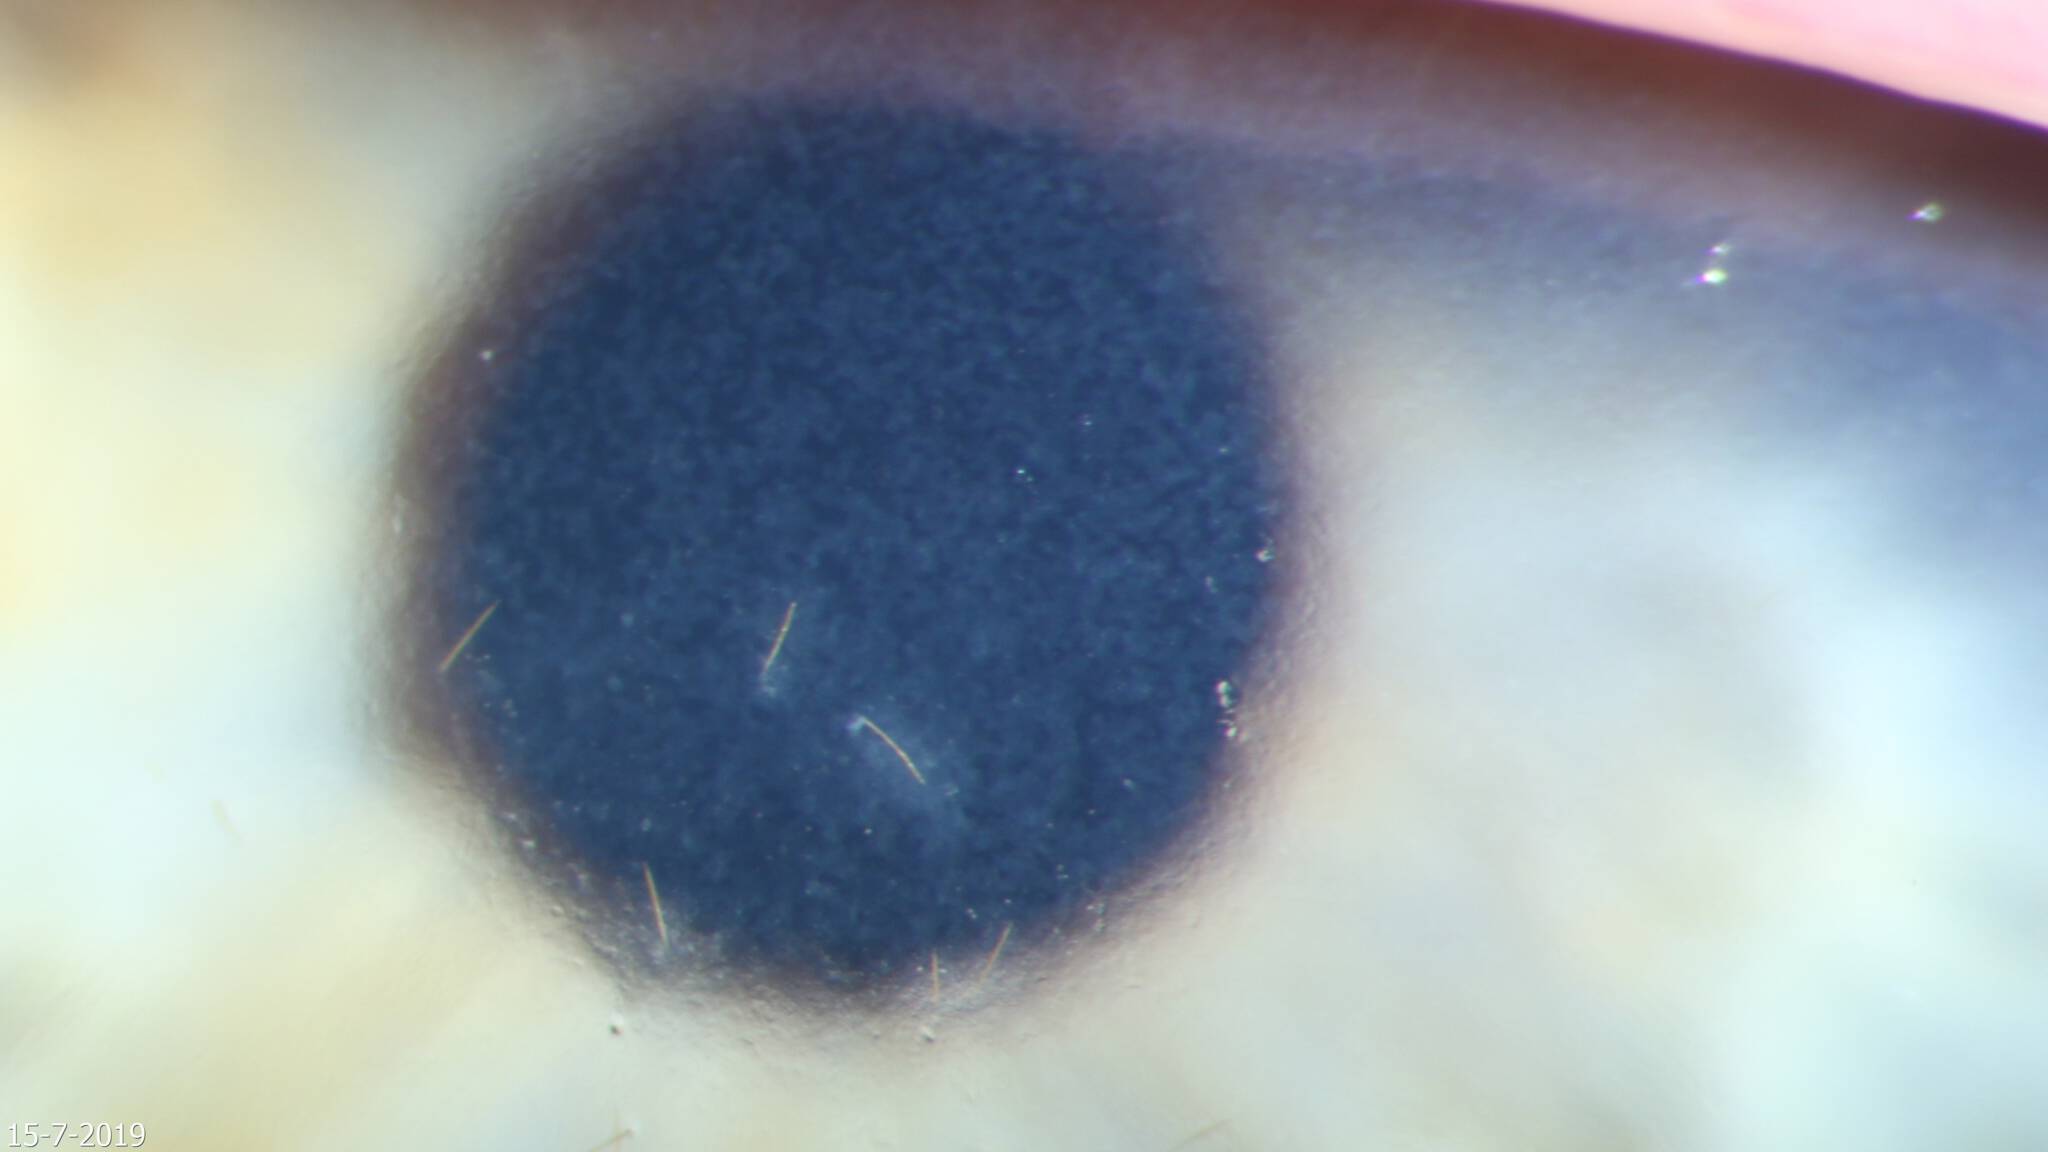 Haartjes van een eikenprocessierups in het oog van een meisje van 12